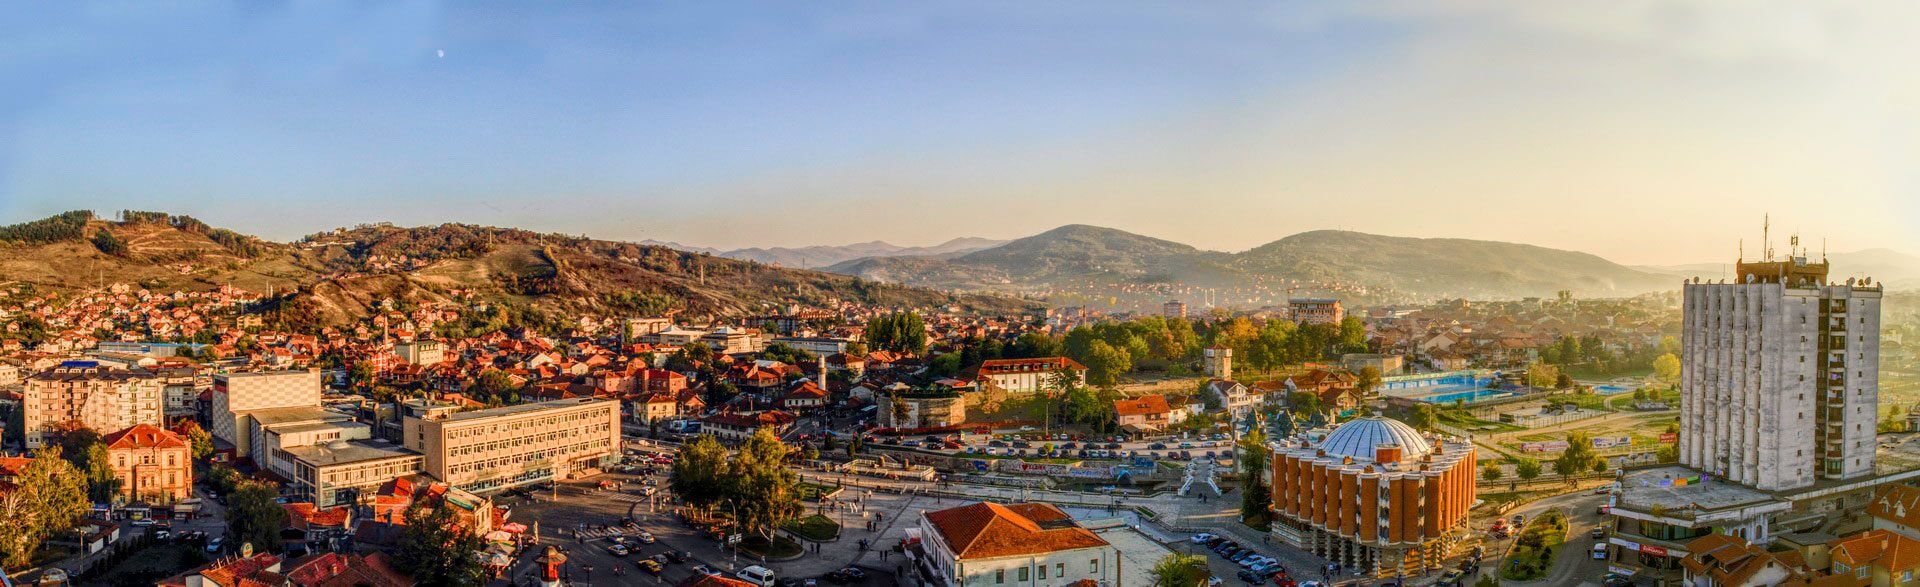 Novi Pazar | Serbia Incoming™ DMC.